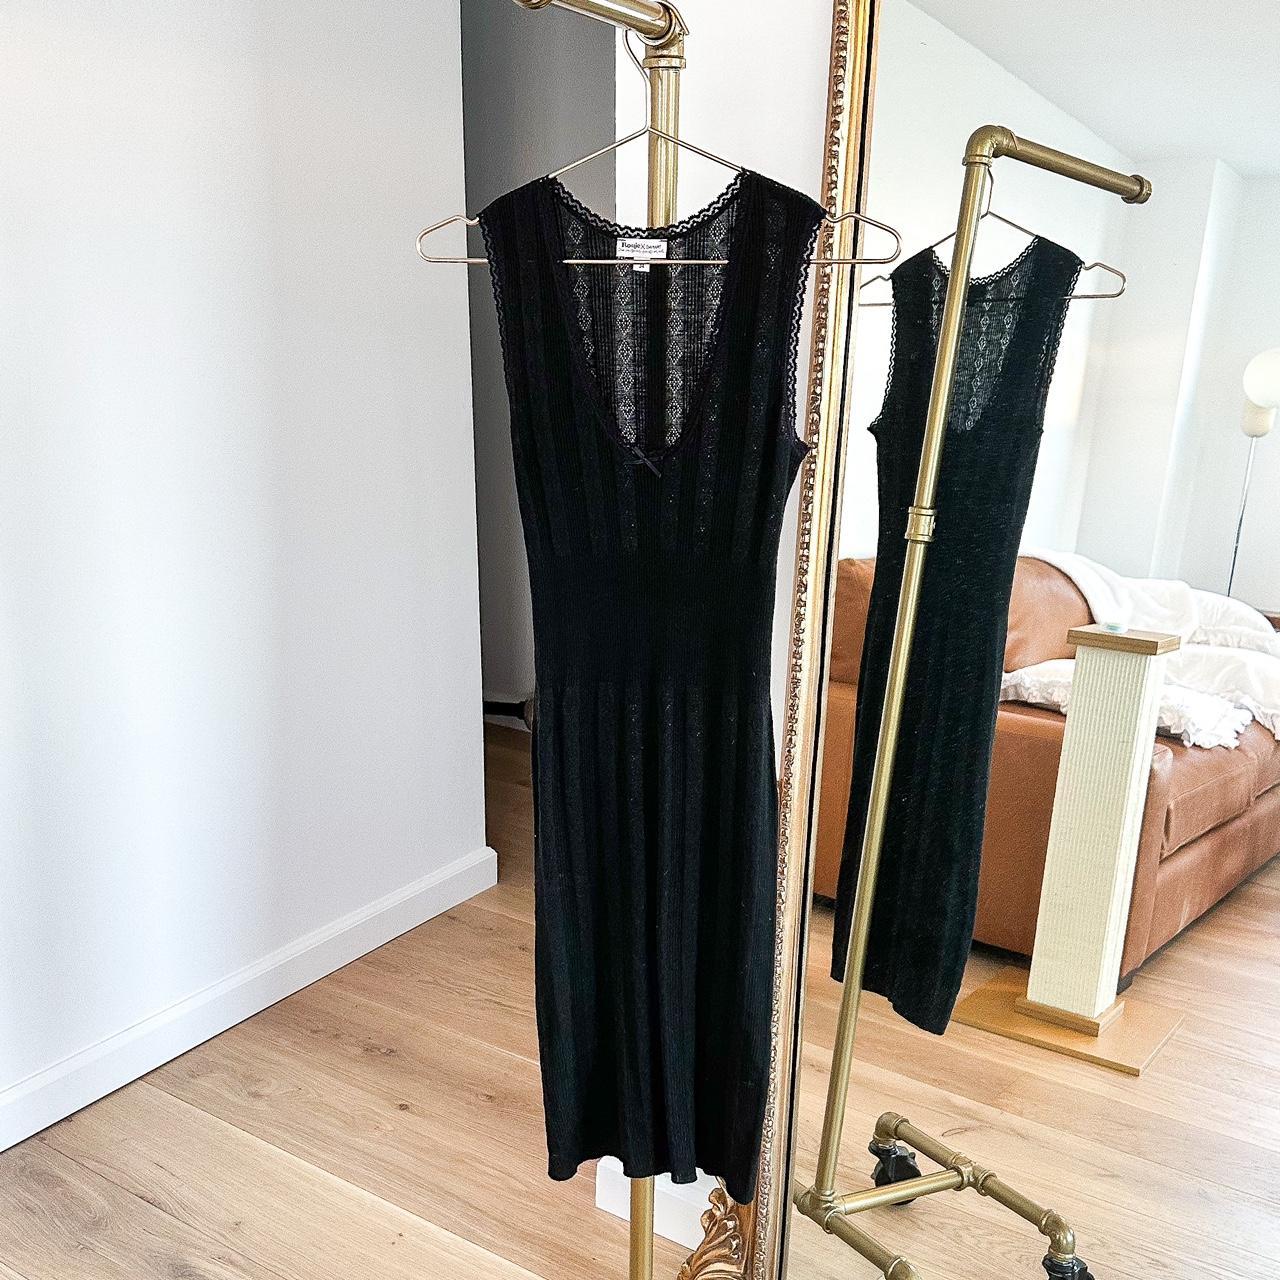 Rouje x Damart Giselle Dress in Uni Noir. Brand new... - Depop